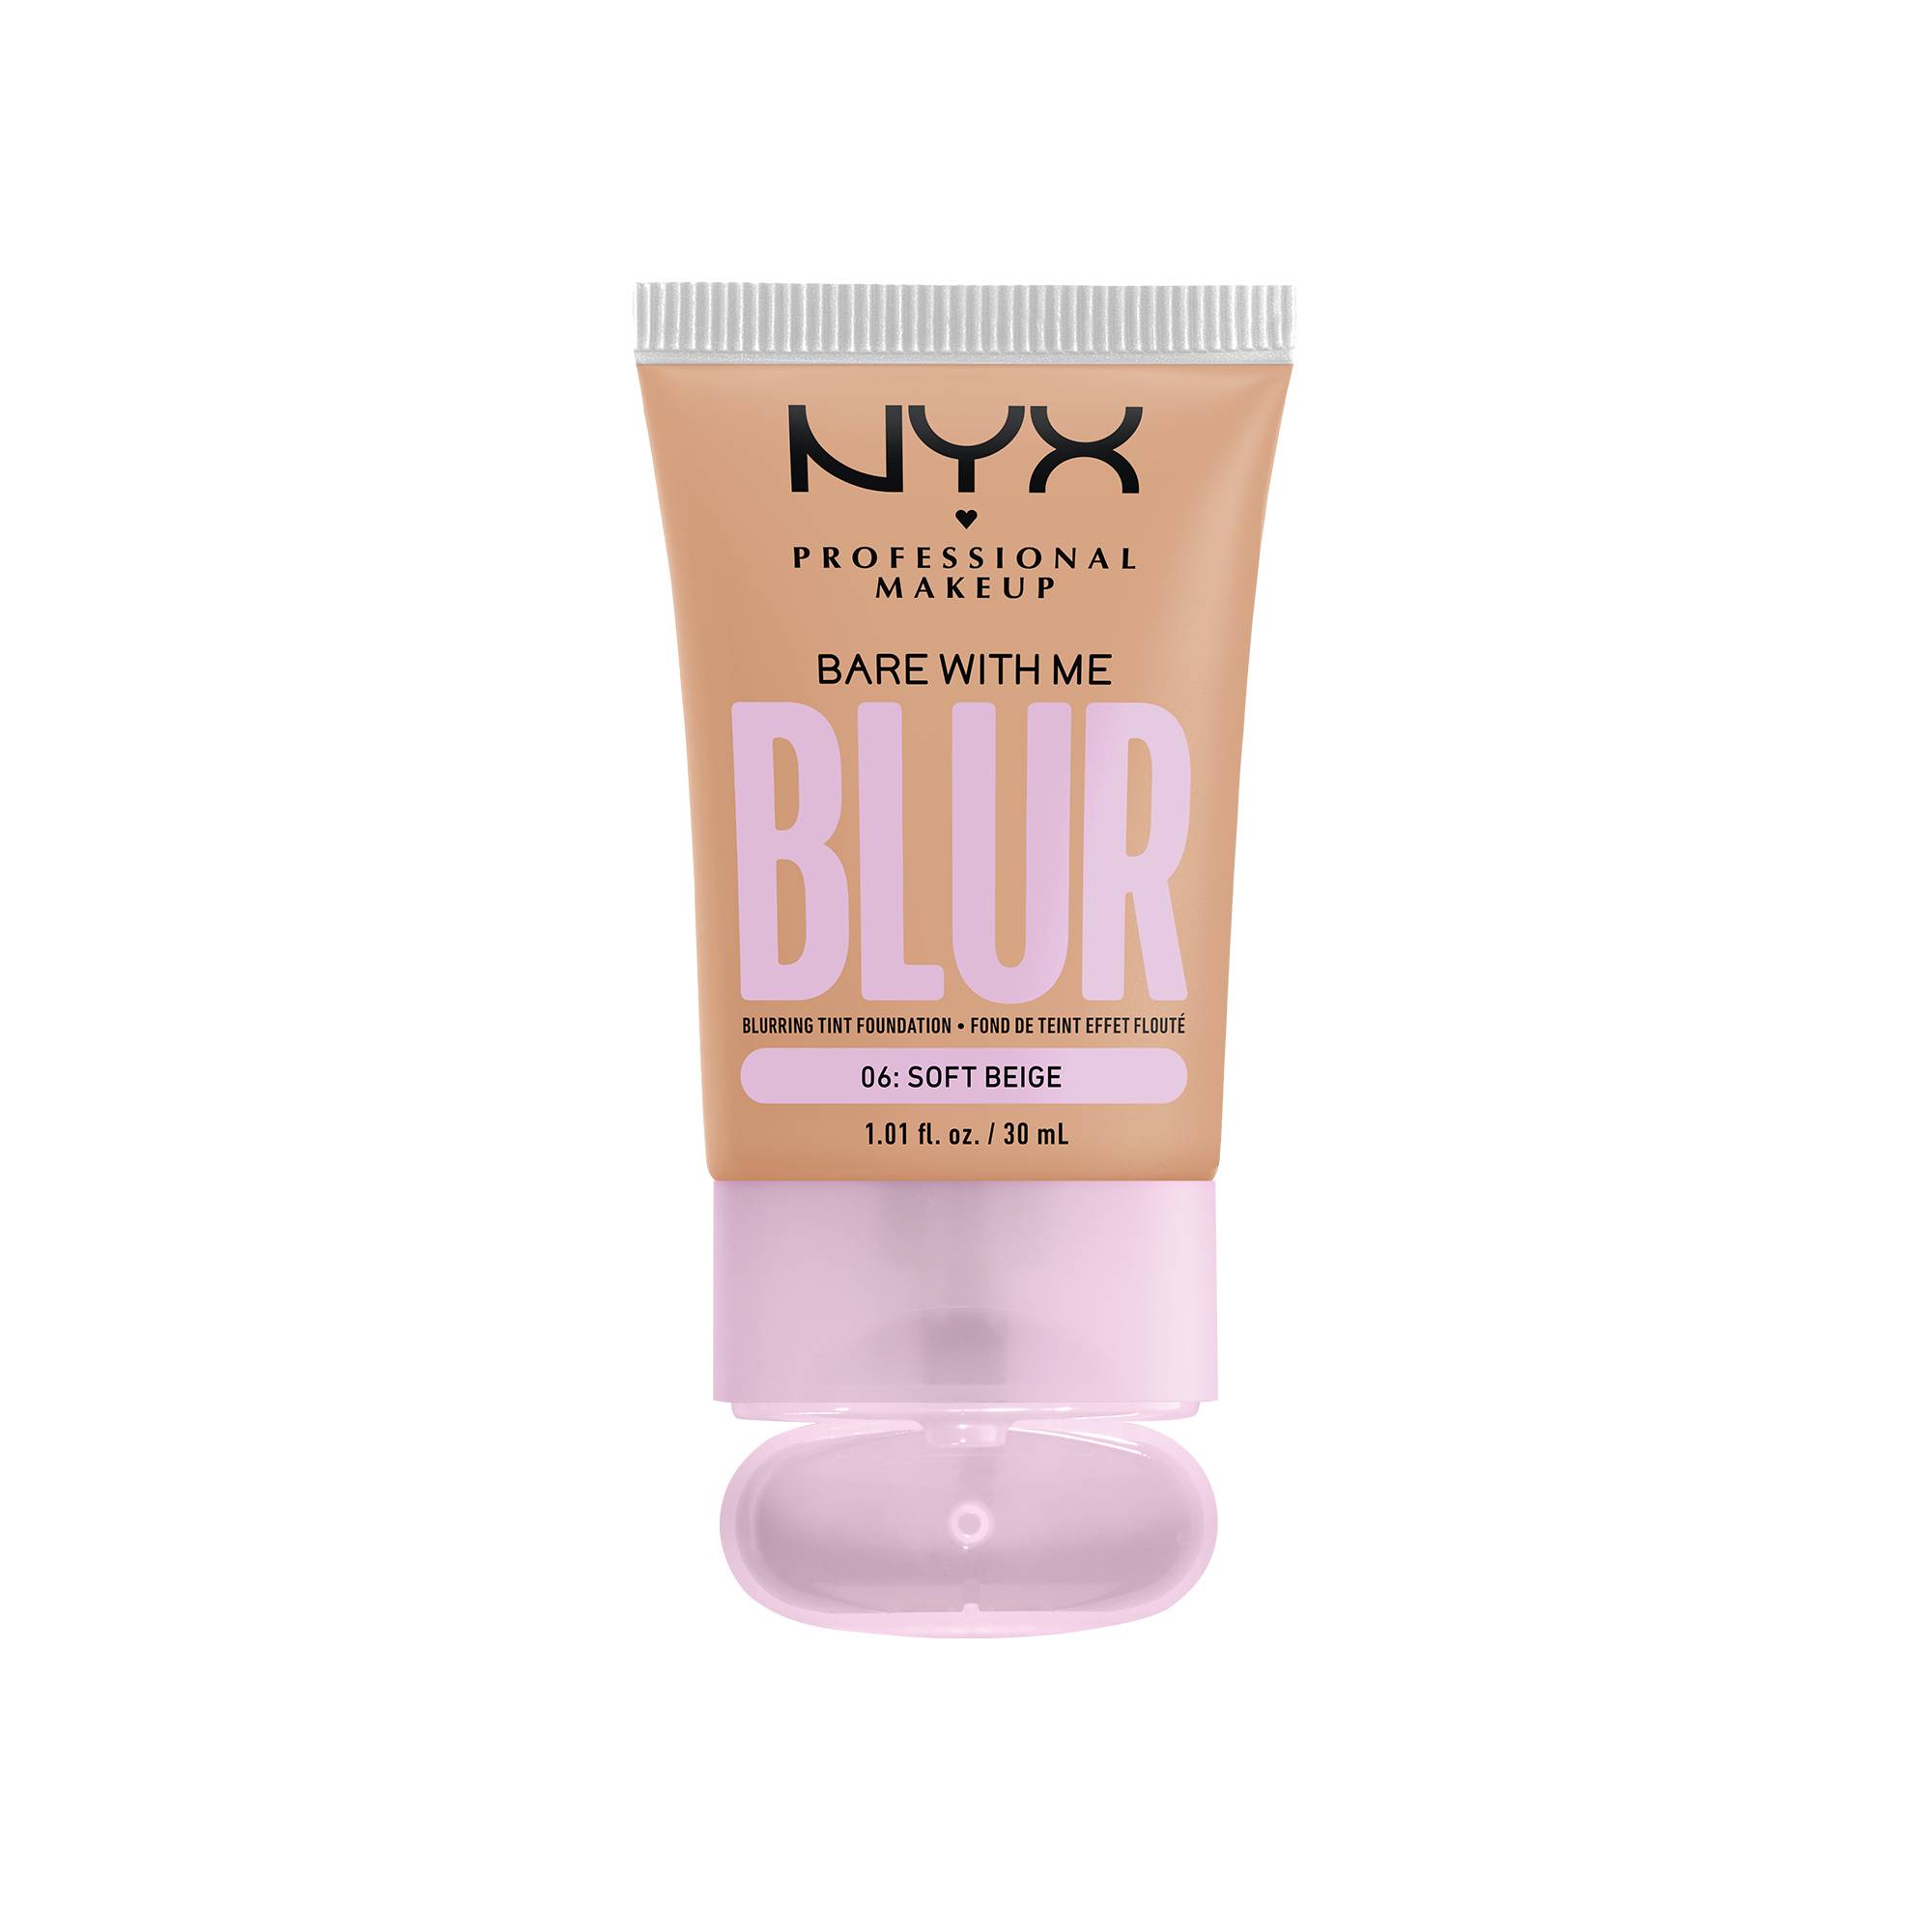 Fond de teint effet flouté Bare With Me Blur Soft Beige de la marque NYX Professional Makeup - 1